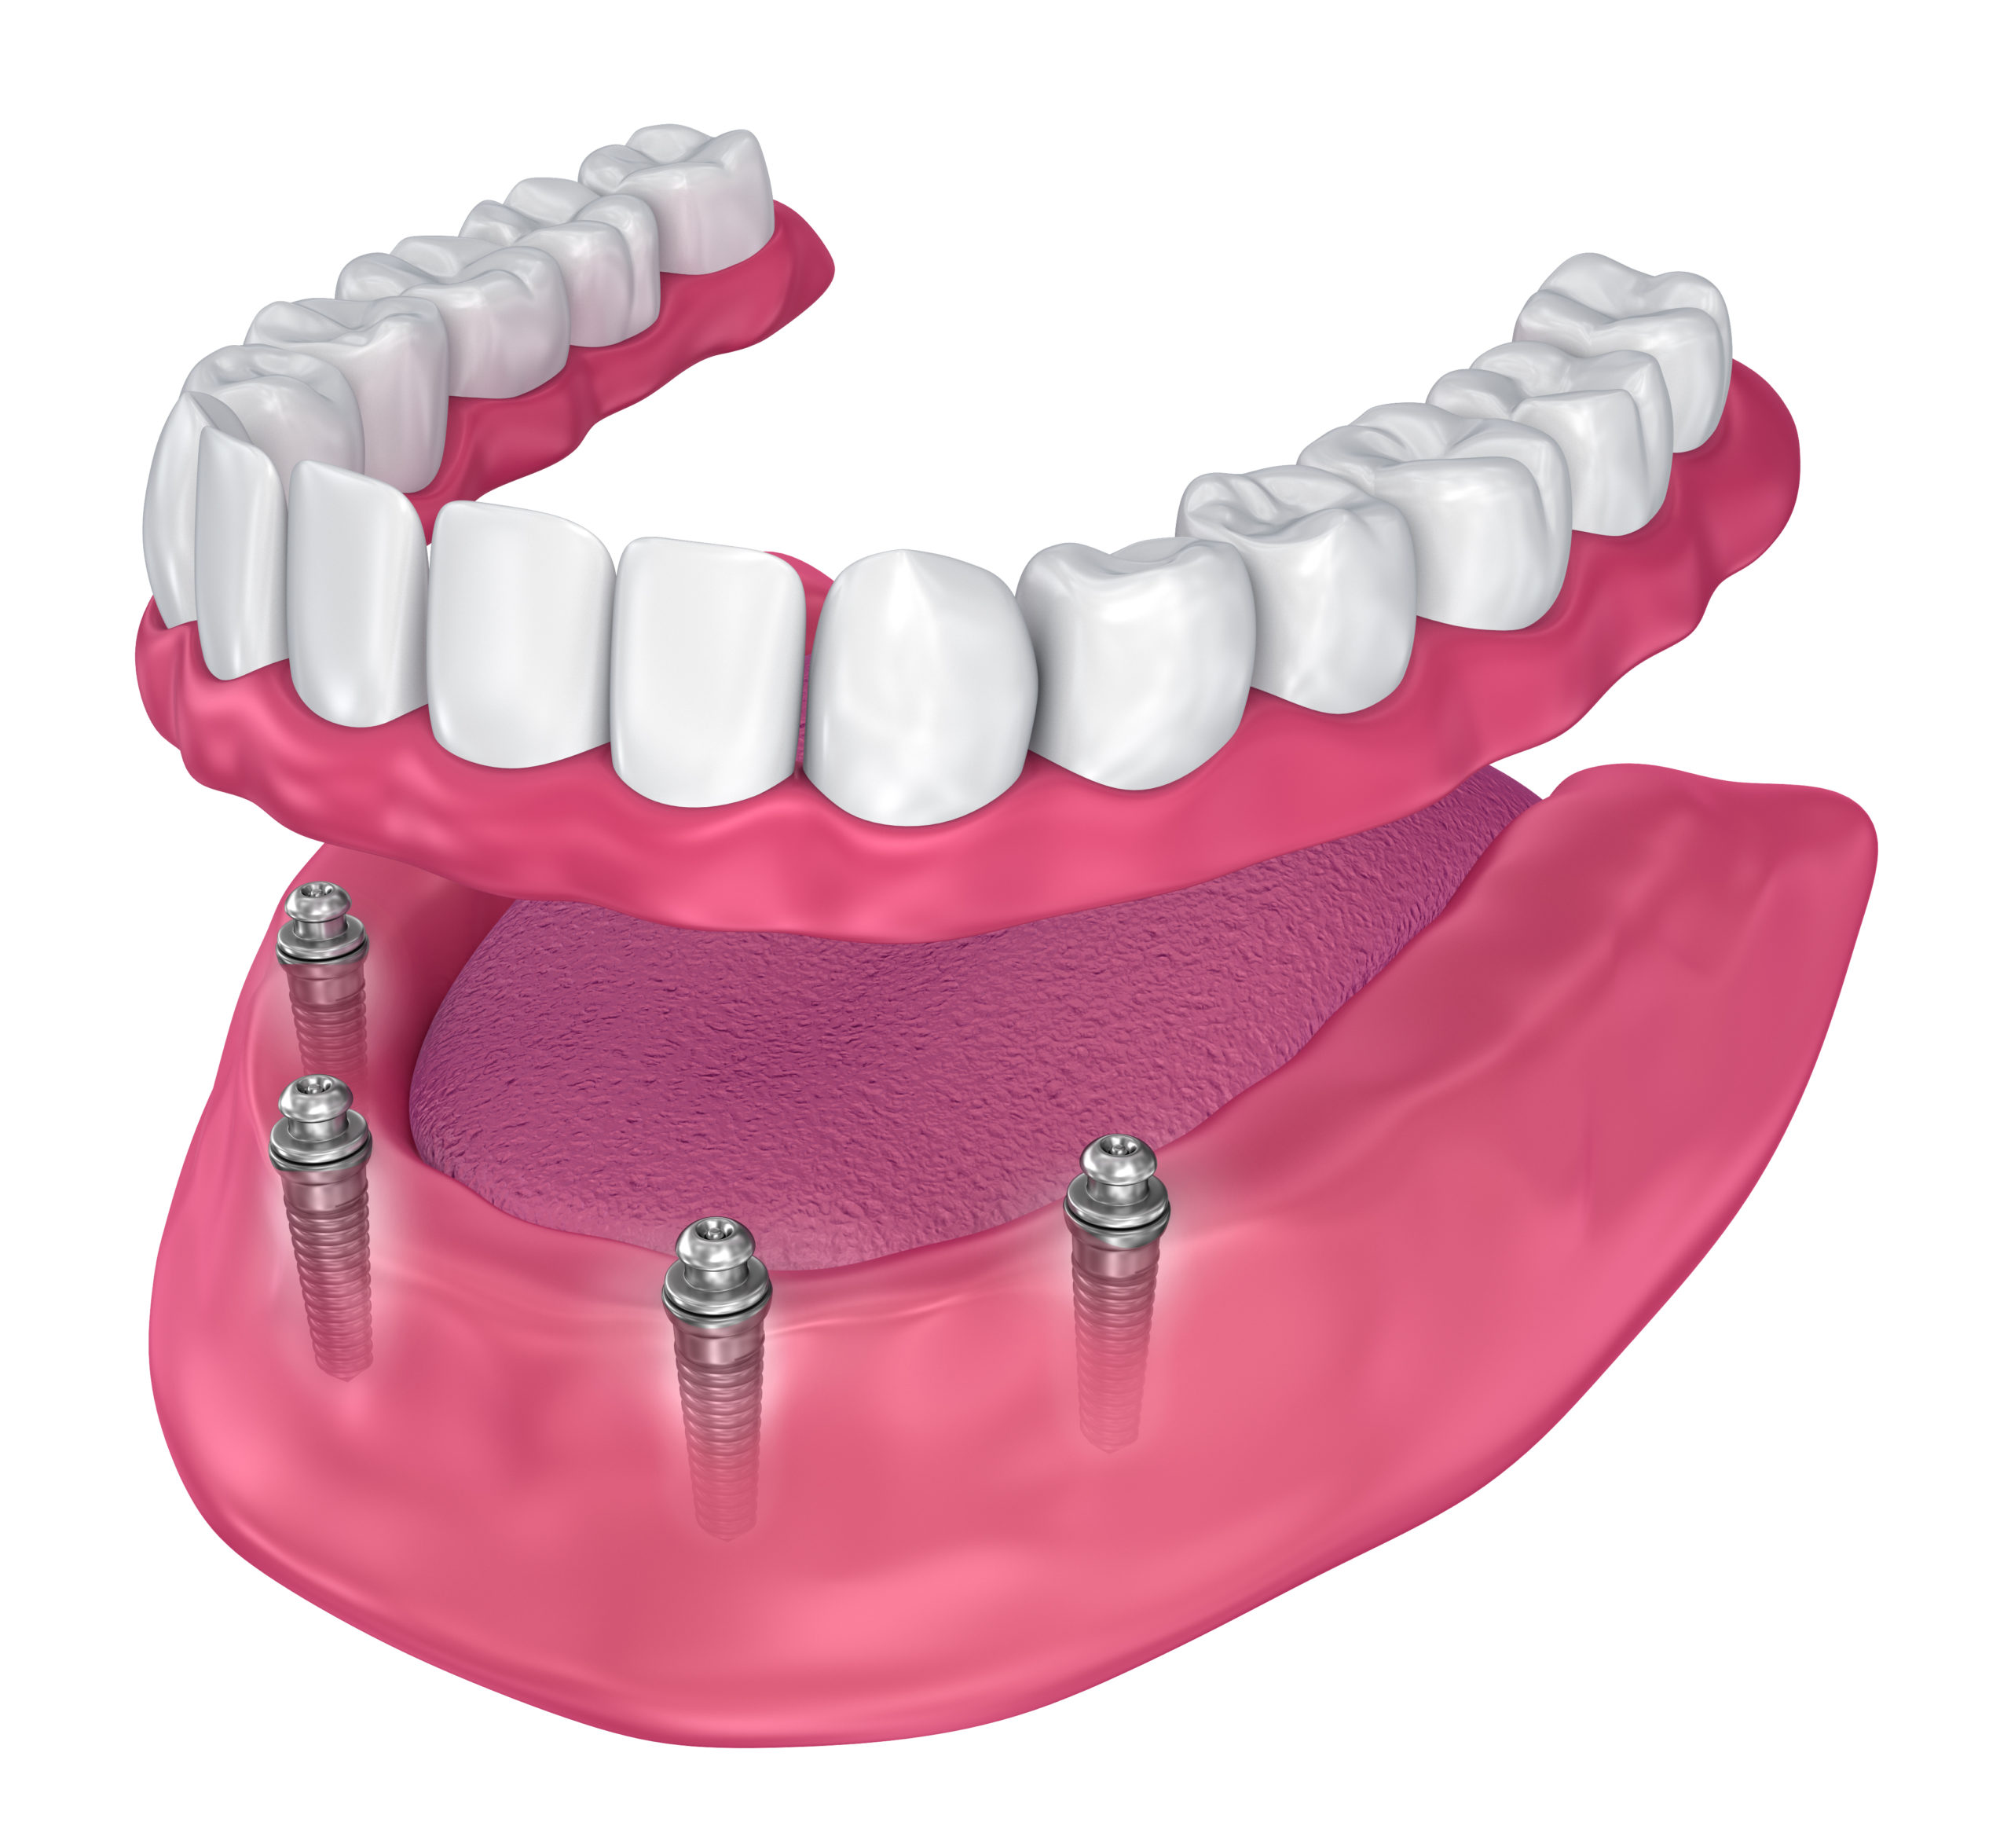 Dental Implants and Dentures – Better Together